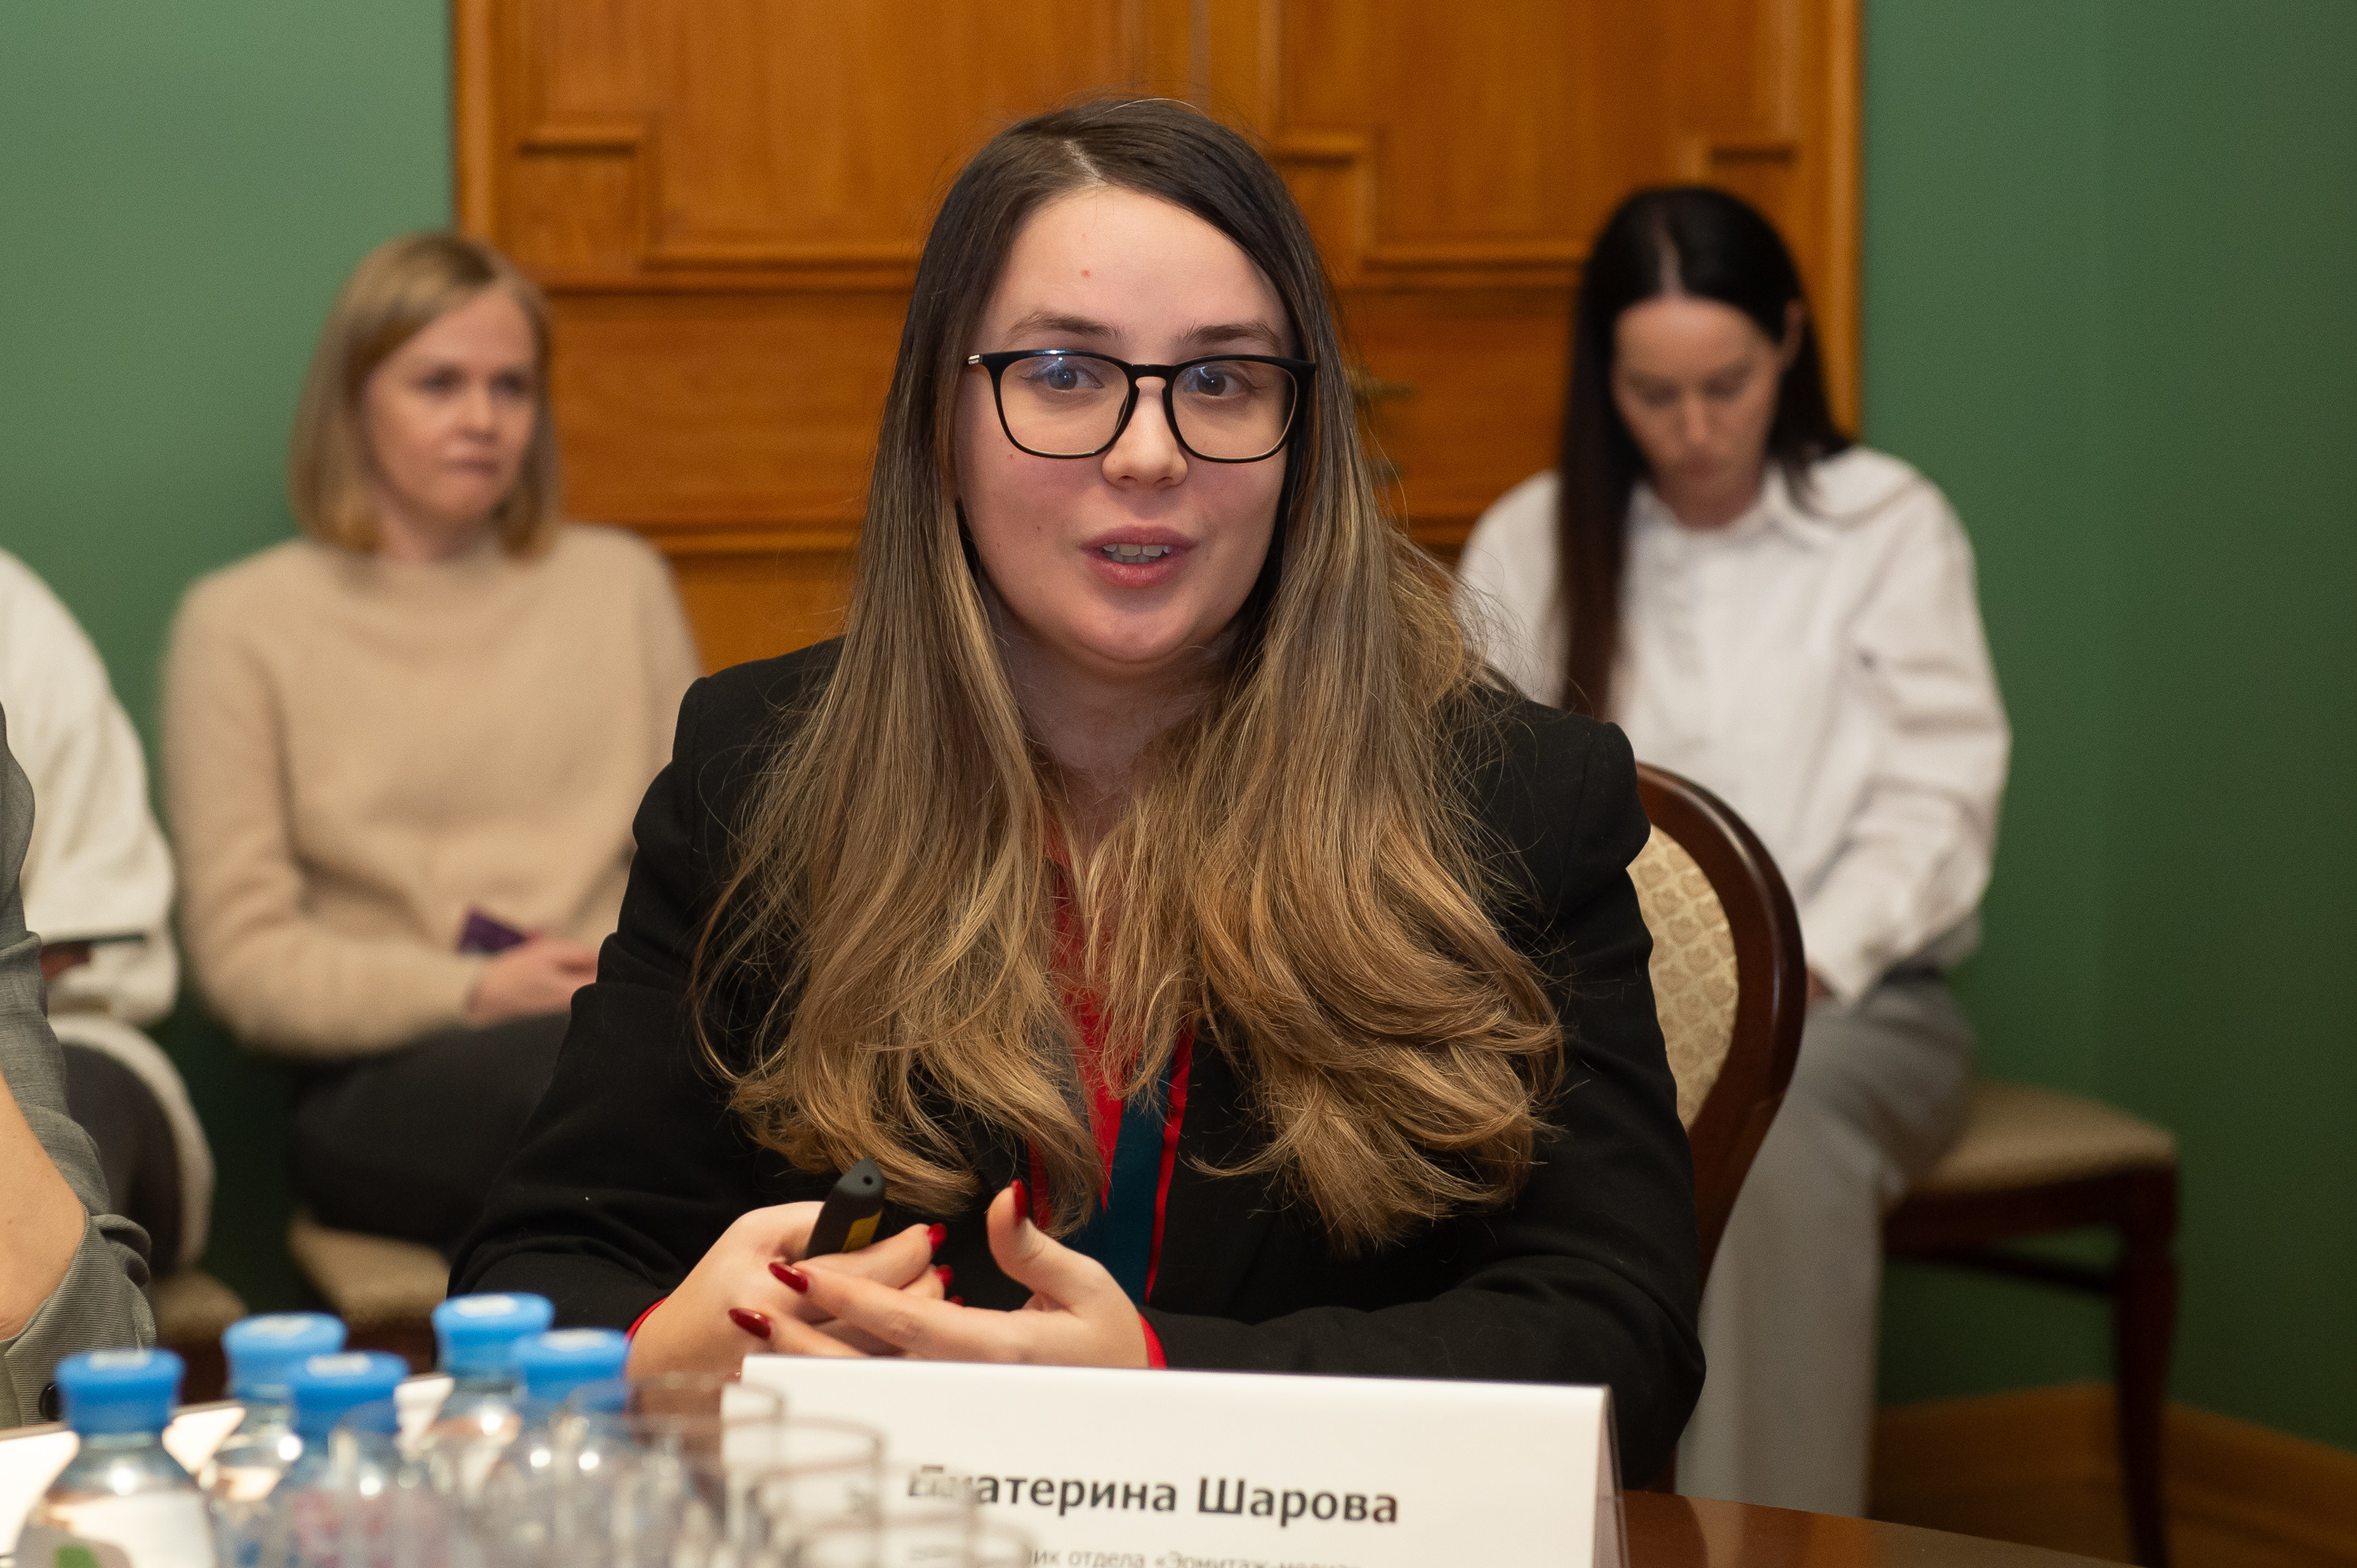 Екатерина Шарова, руководитель отдела «Эрмитаж-медиа» Государственного Эрмитажа